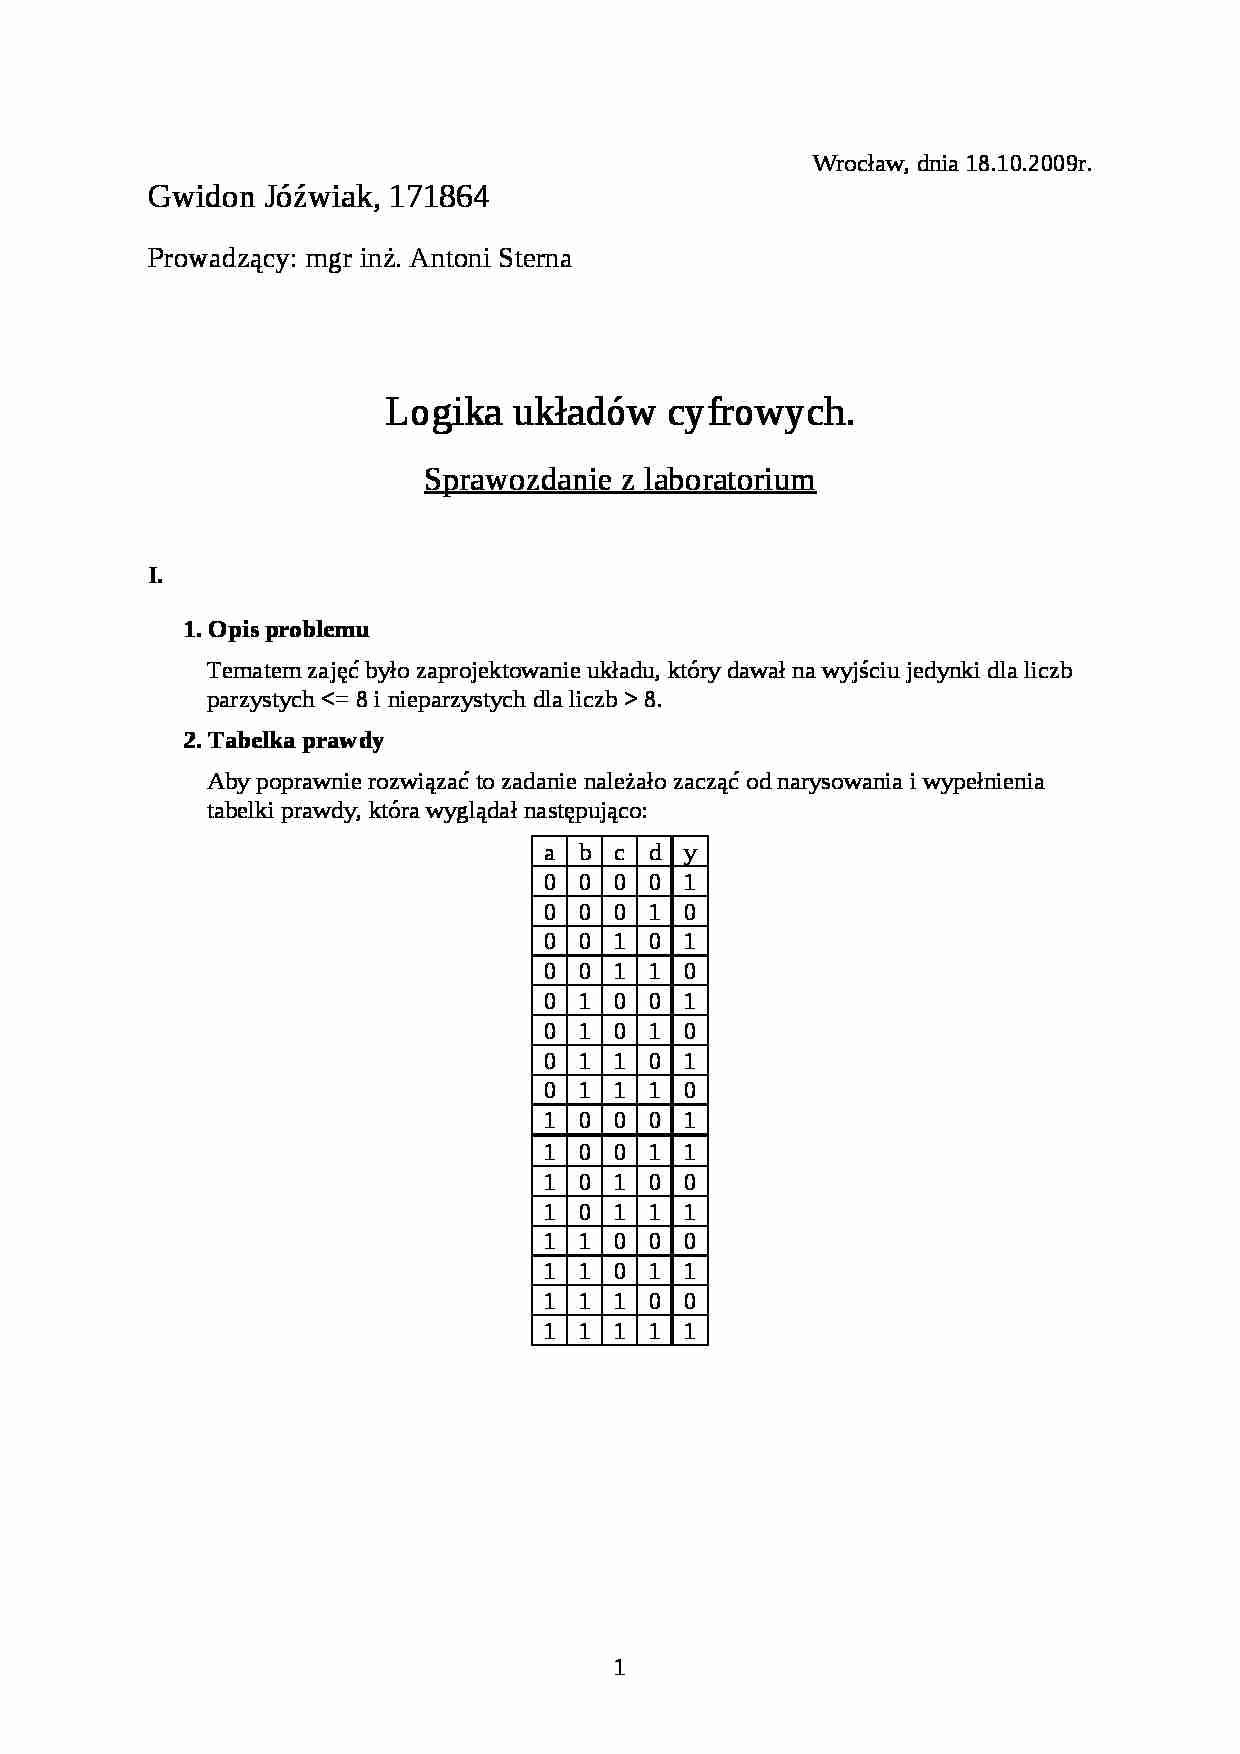 Logika układów cyfrowych-sprawozdanie - strona 1